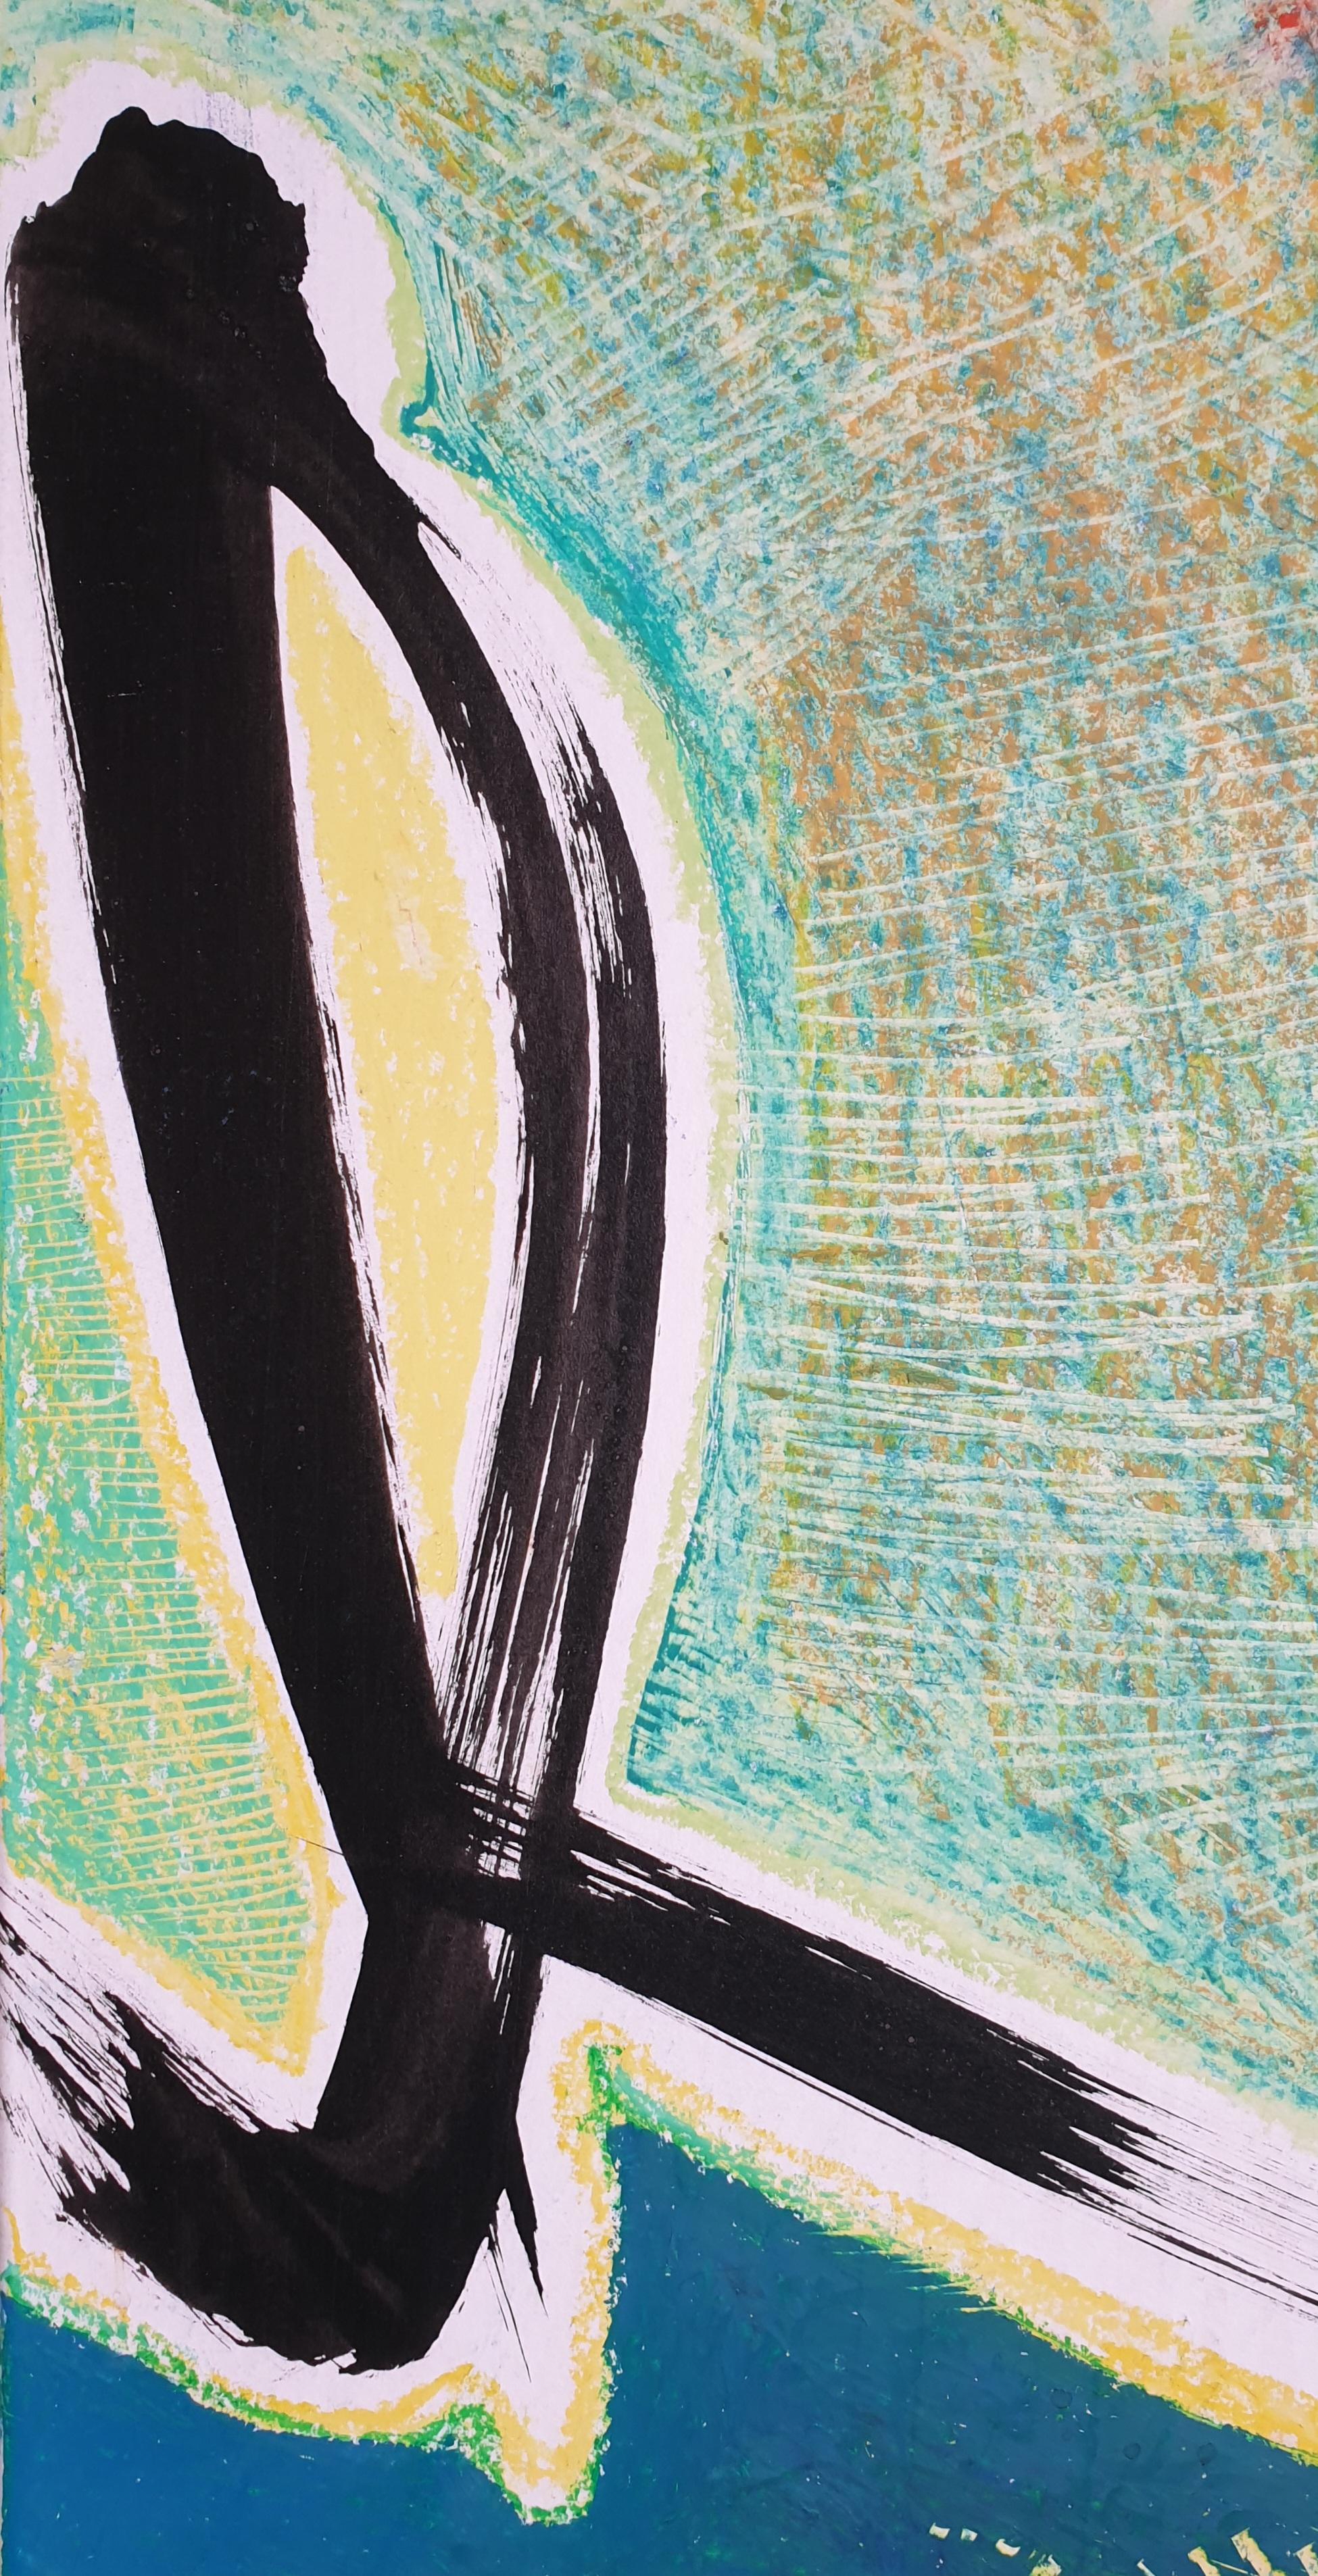 Peinture sur toile expressionniste abstraite et expressionniste sur support de l'artiste français Daniel Klein. Étiquette signée au verso.

Daniel Klein, peintre français, né en 1946, a commencé sa carrière dans la publicité, tout en étant pianiste